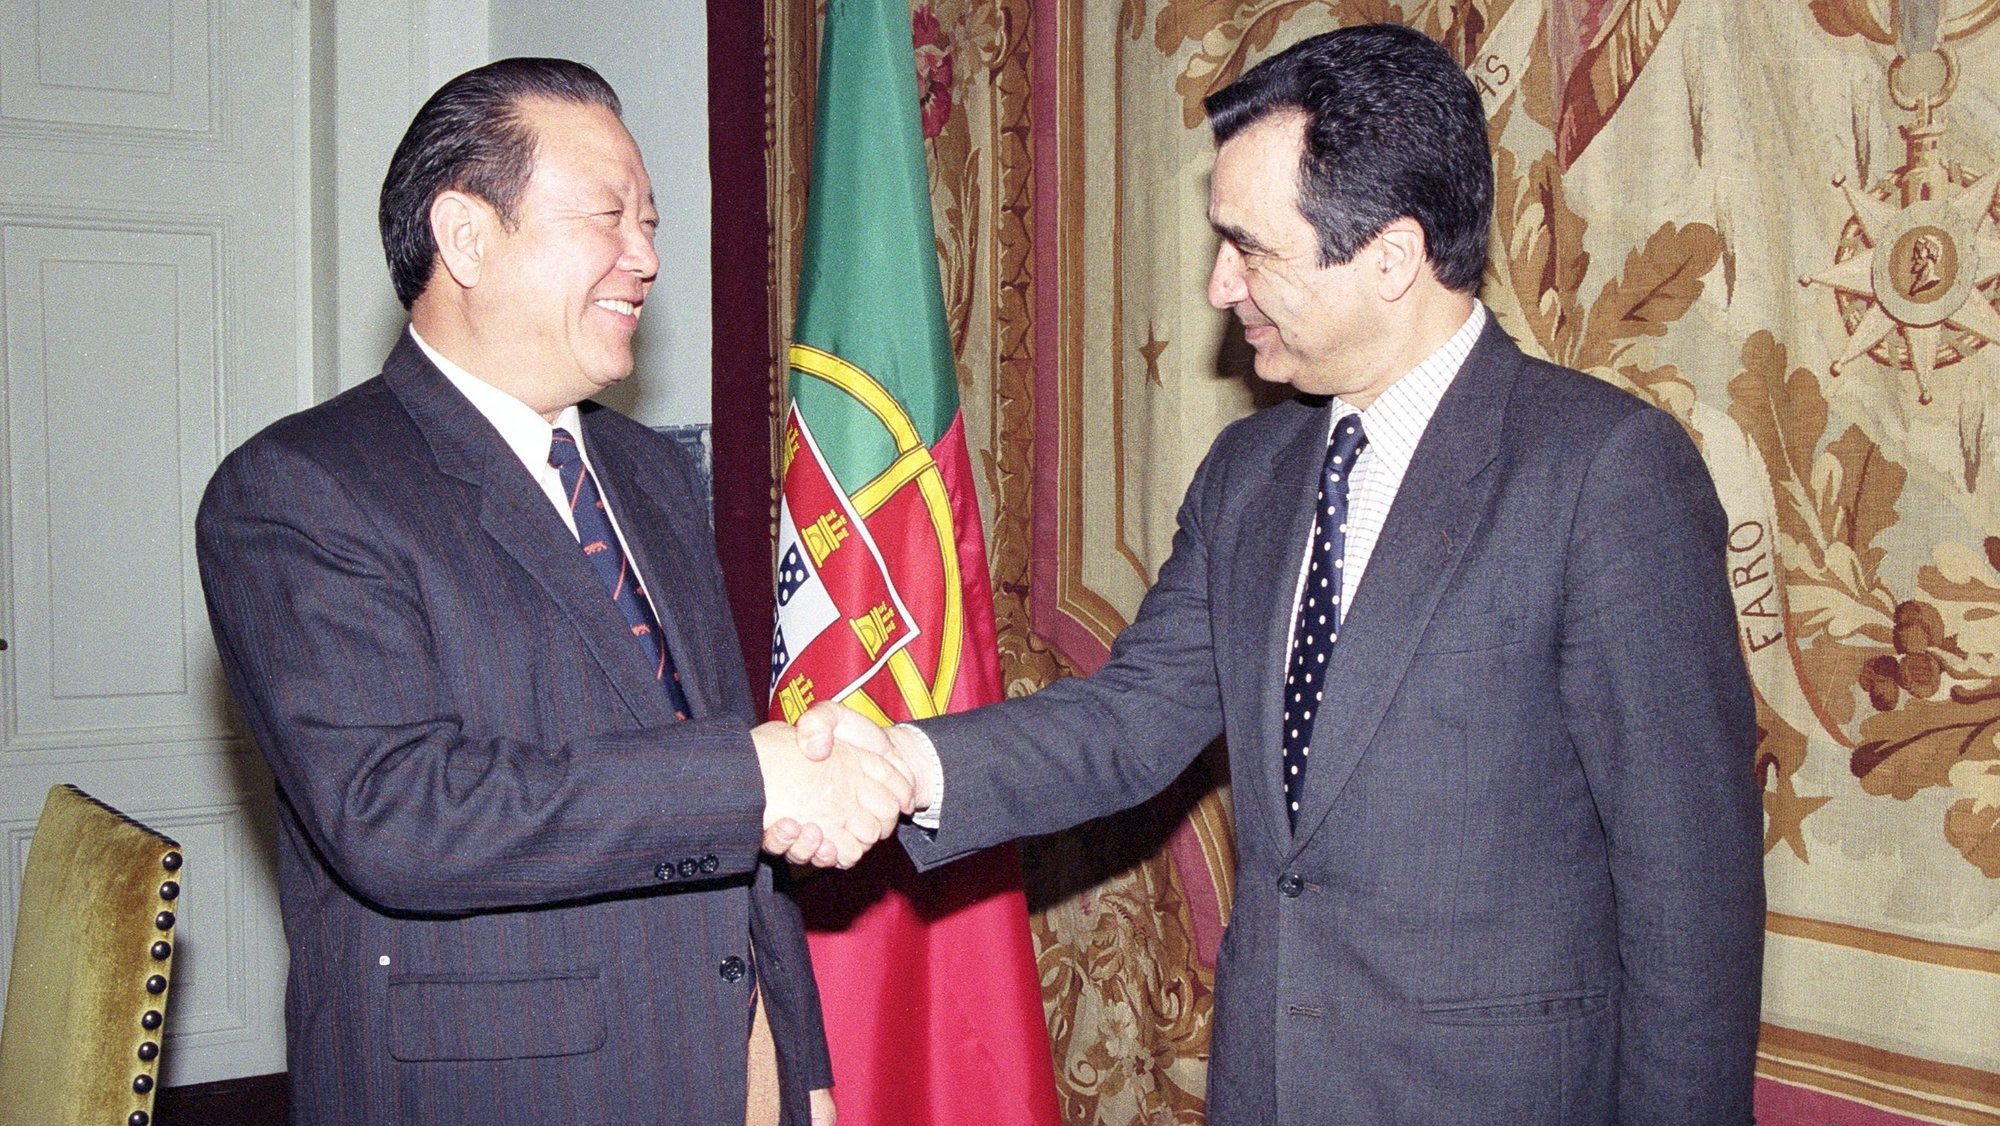 O embaixador português Pedro Catarino recebe o embaixador chinês Kang Jimin no início da reunião plenária do Grupo de Ligação Luso-Chinês, em Lisboa a 16 de março de 1992.

Guilherme Venâncio / Lusa